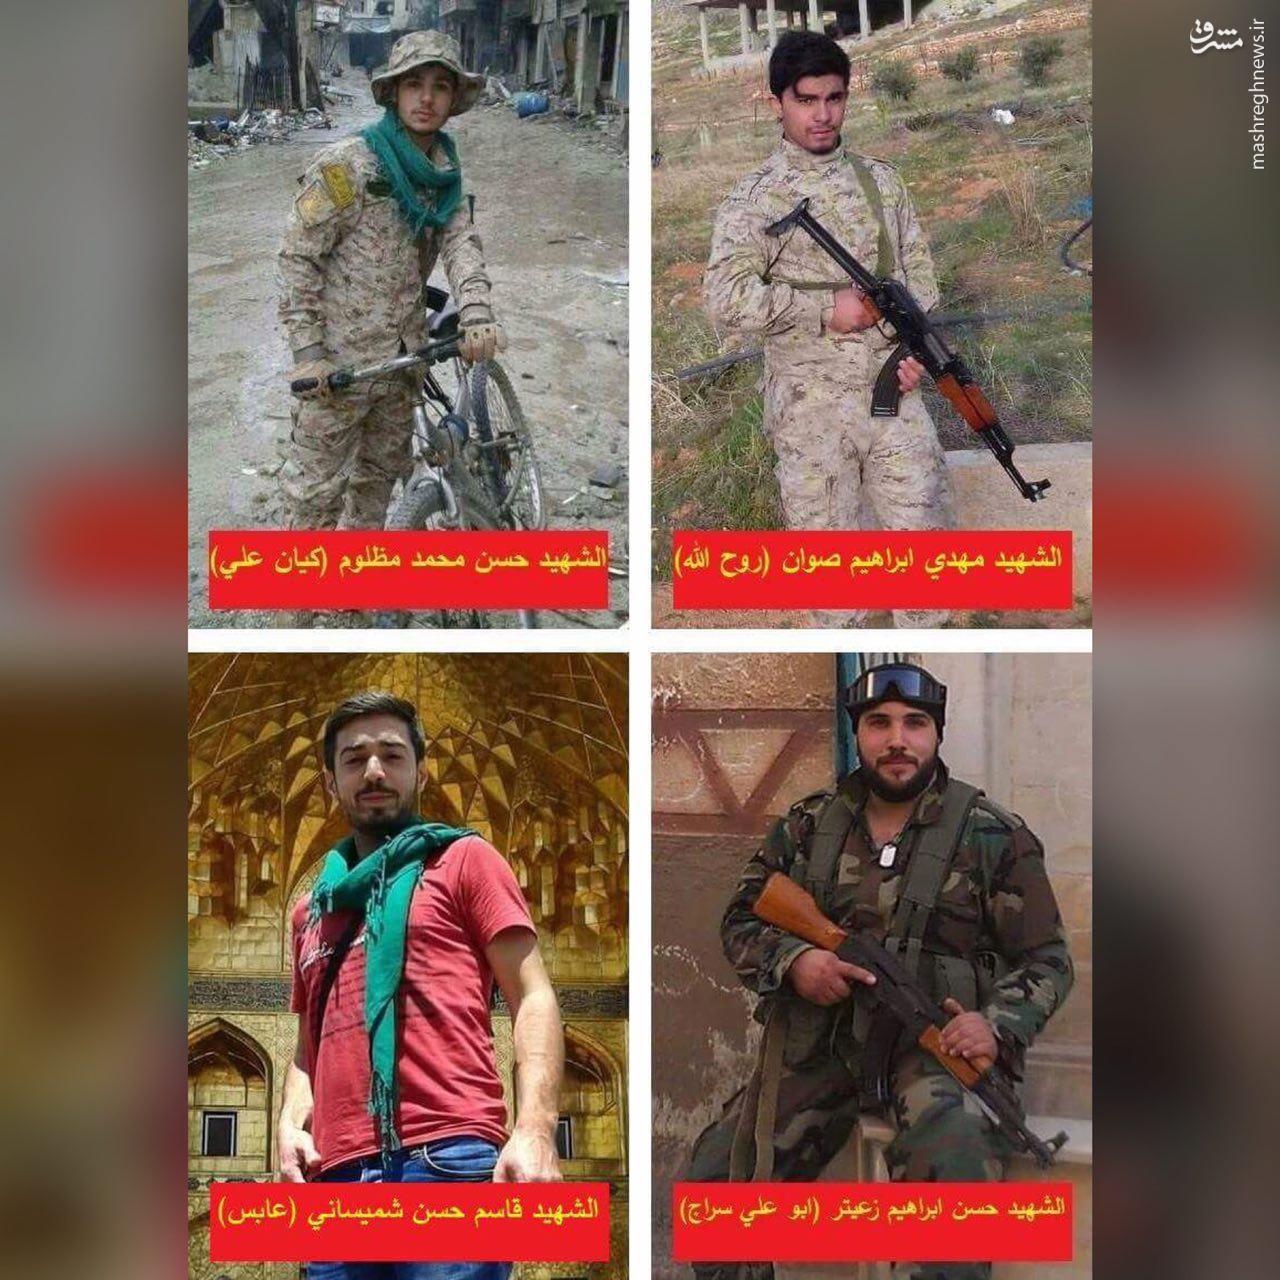  شهادت ۴ رزمنده حزب الله در حلب سوریه + عکس